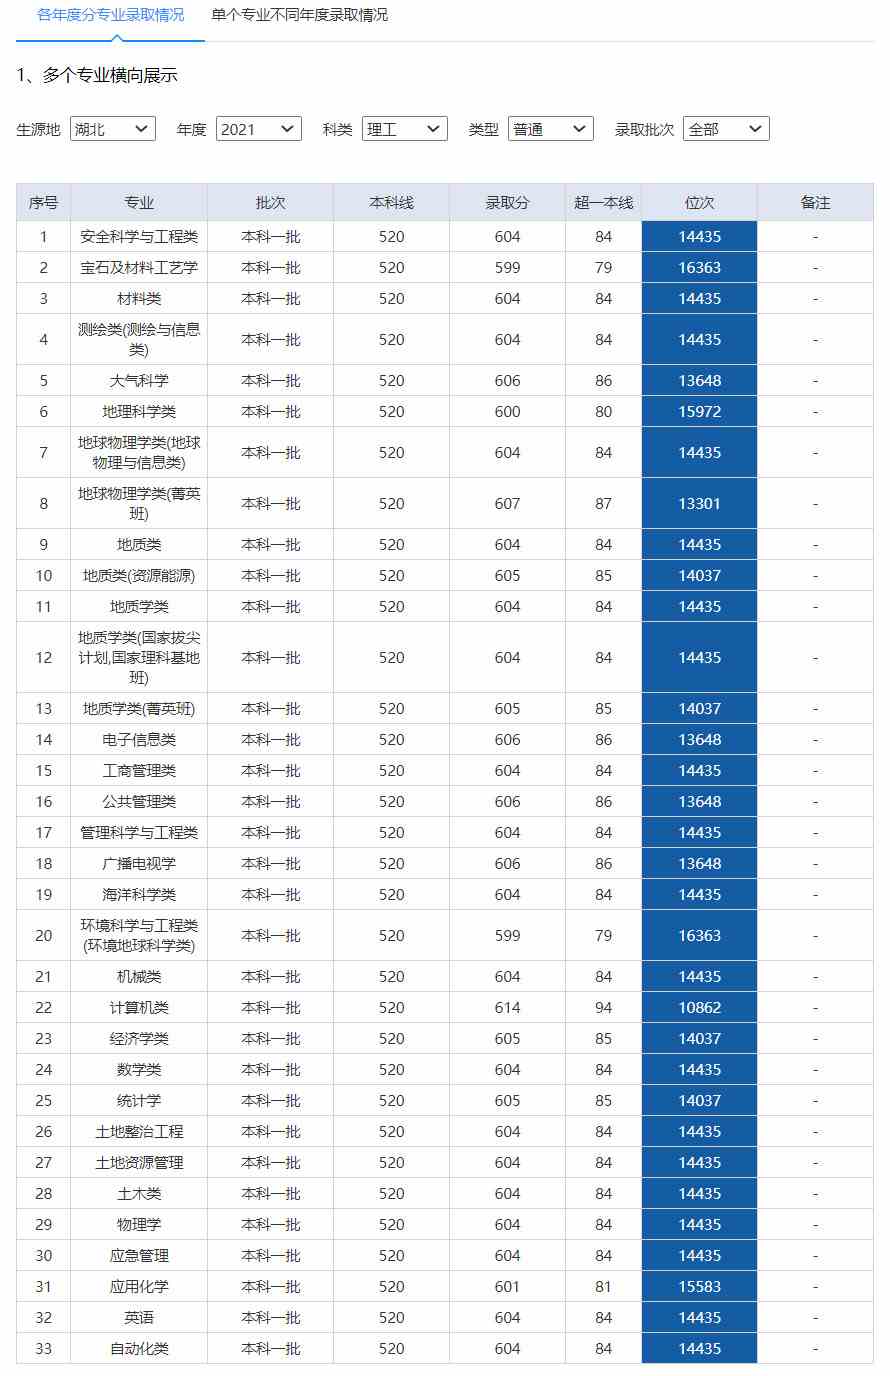 中国地质大学(武汉)2020年录取分数线.jpg